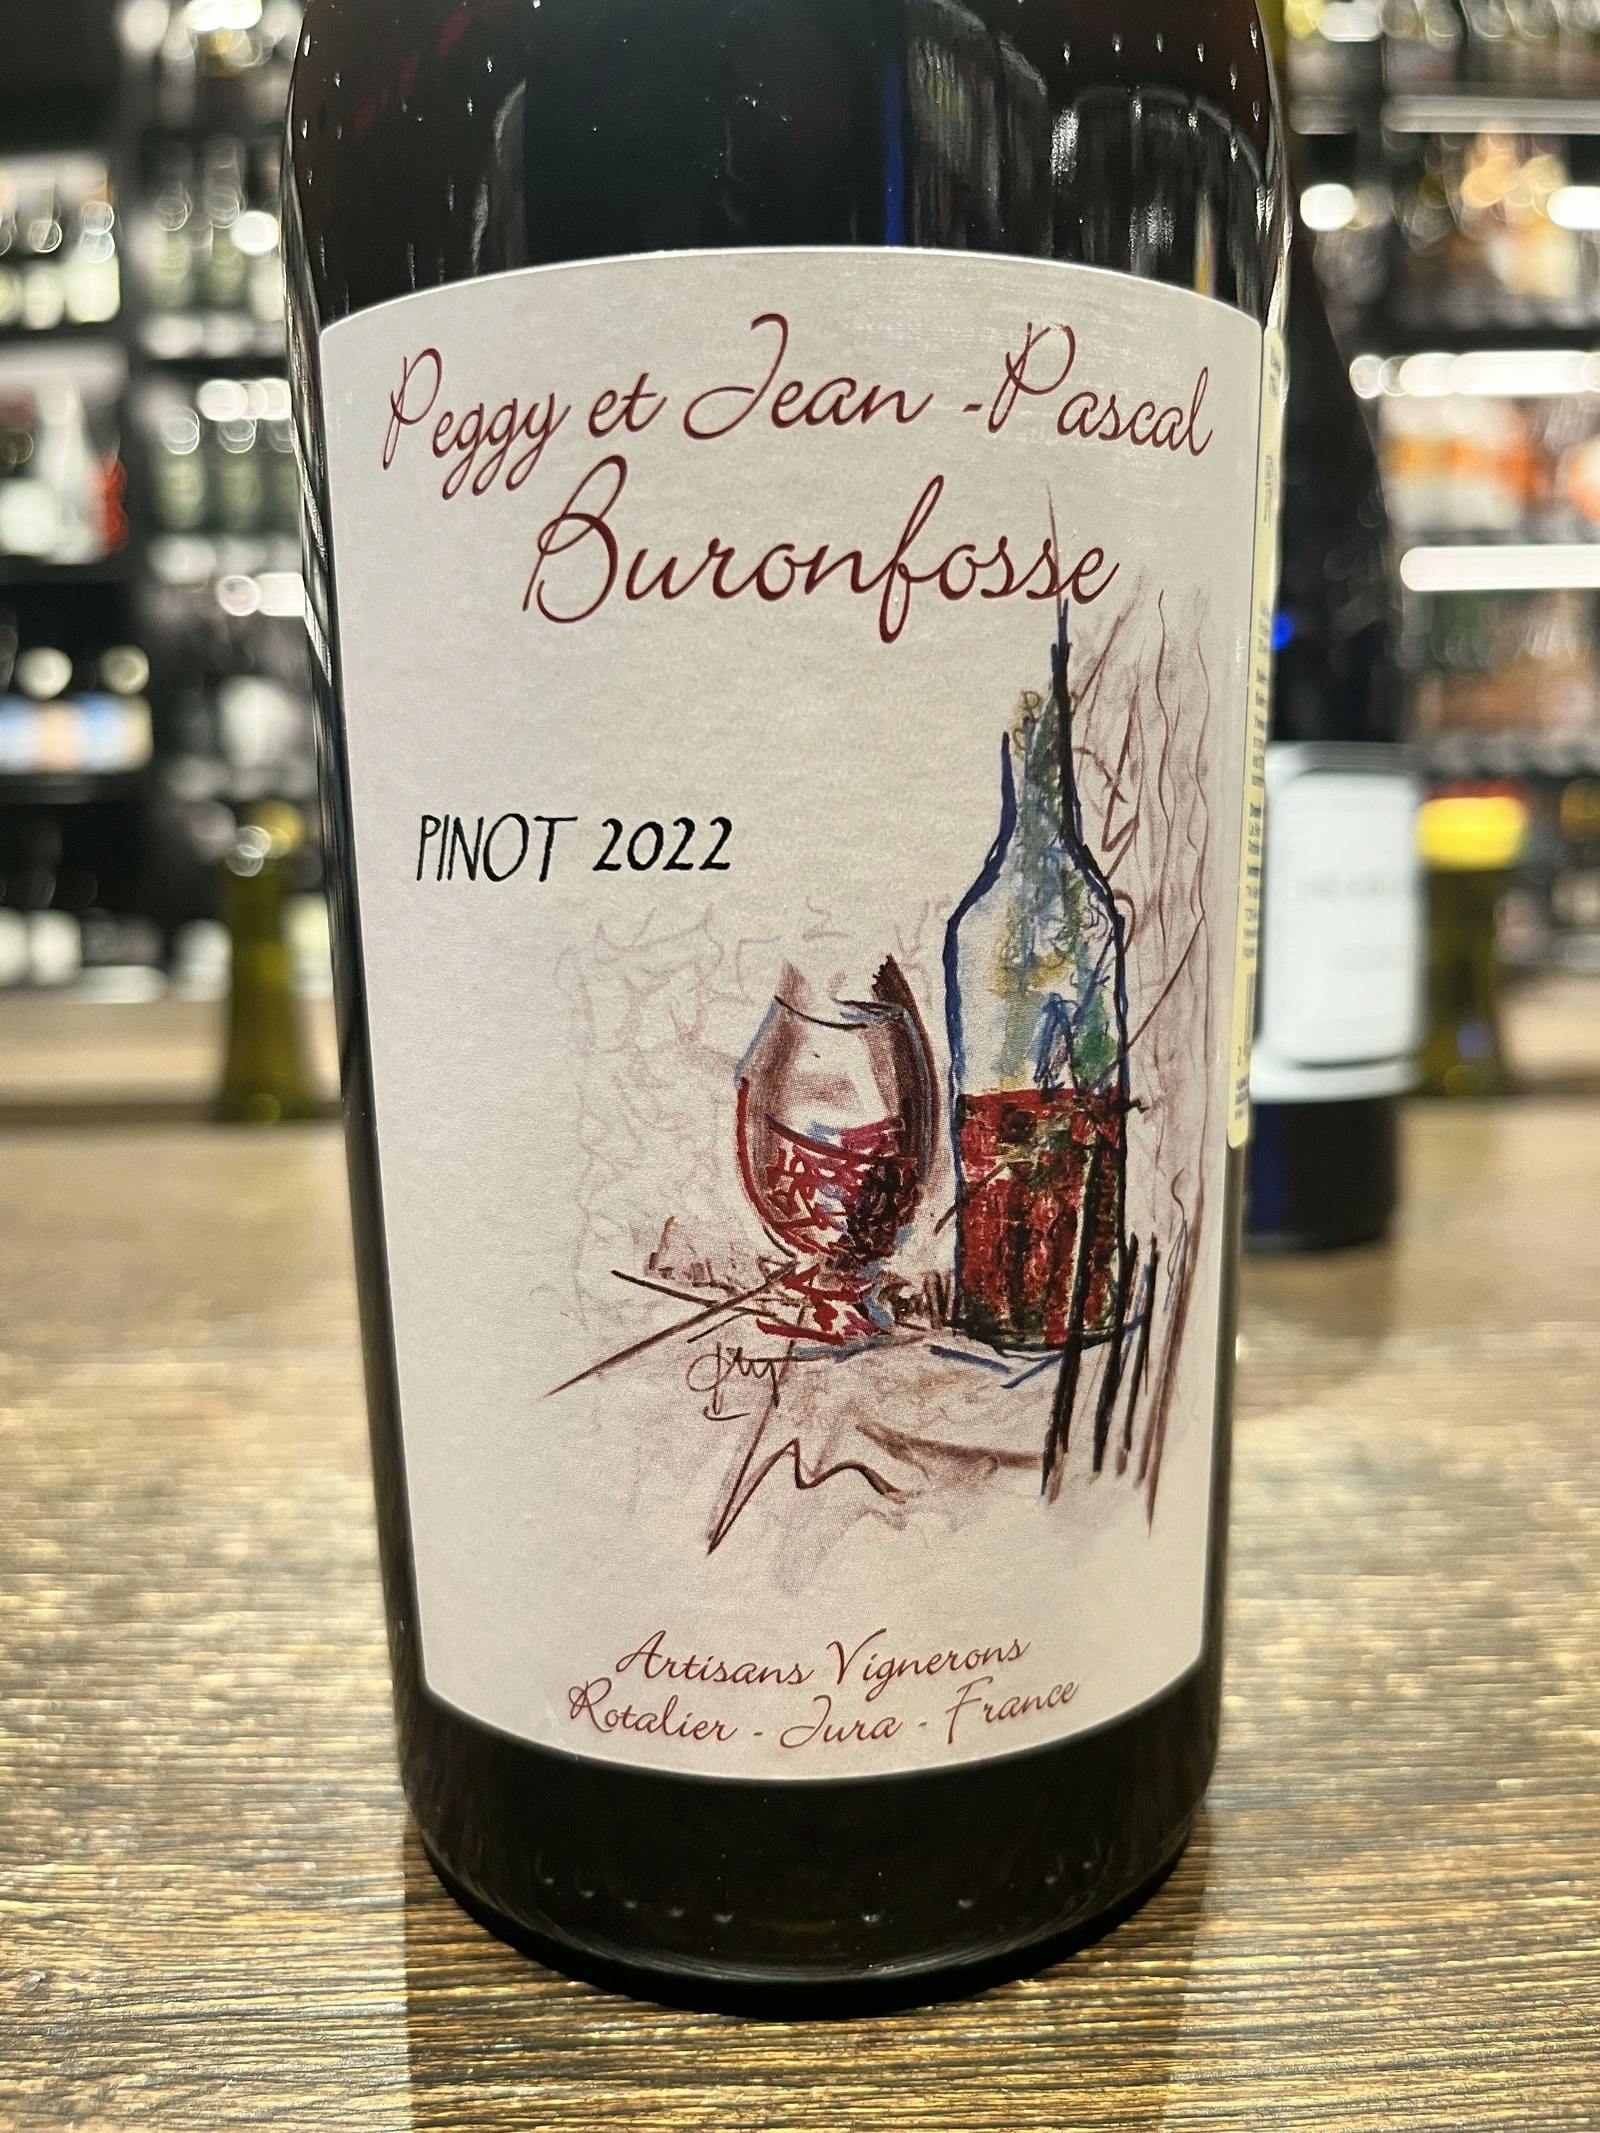 Buronfosse Pinot 2022